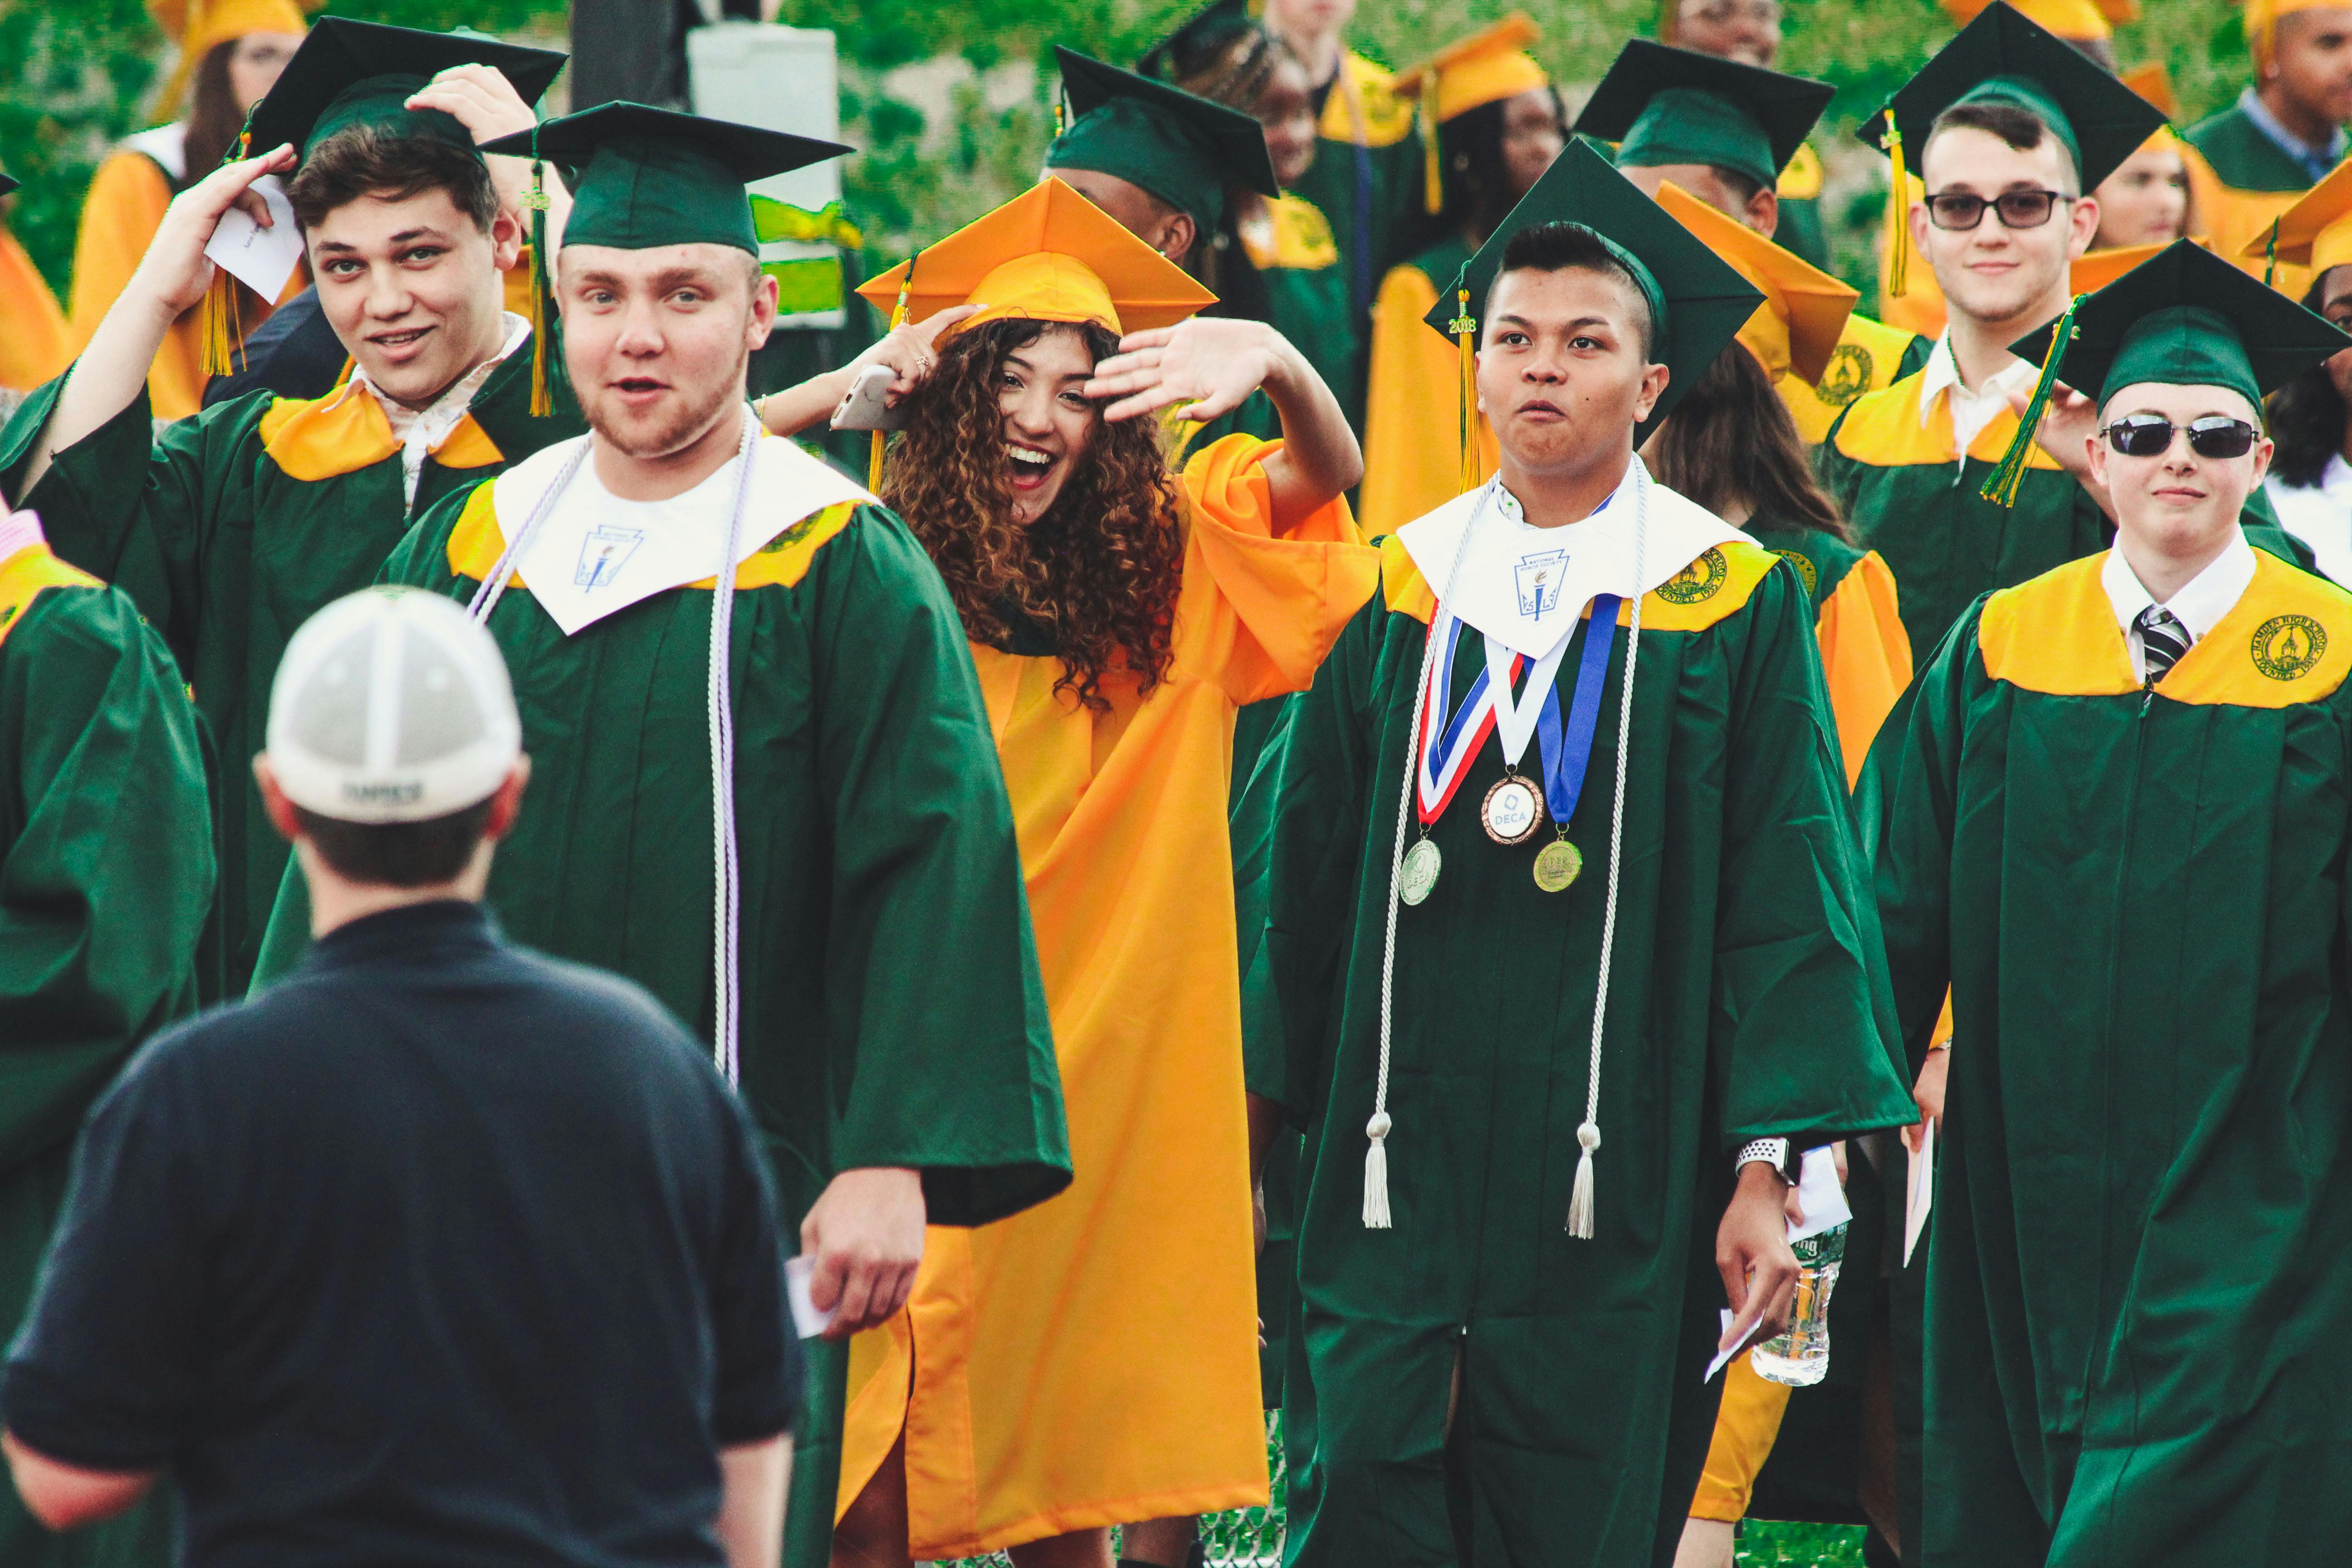 Des diplômés de l'enseignement supérieur lors d'une cérémonie | Source : Pexels